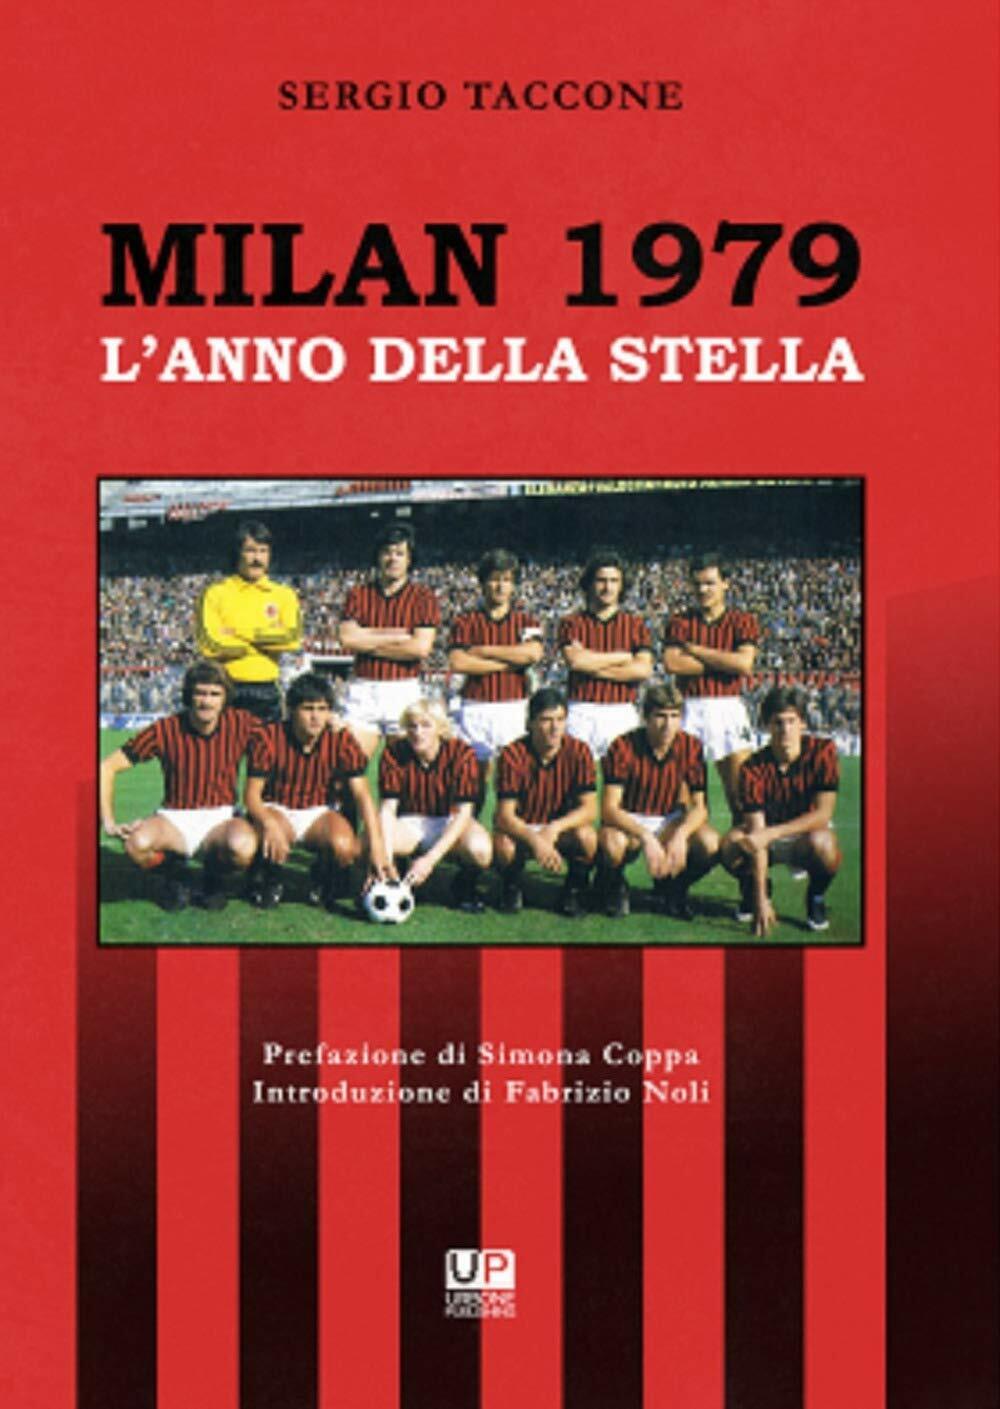 Milan 1979. L'anno della stella - Sergio Taccone - 2019 libro usato